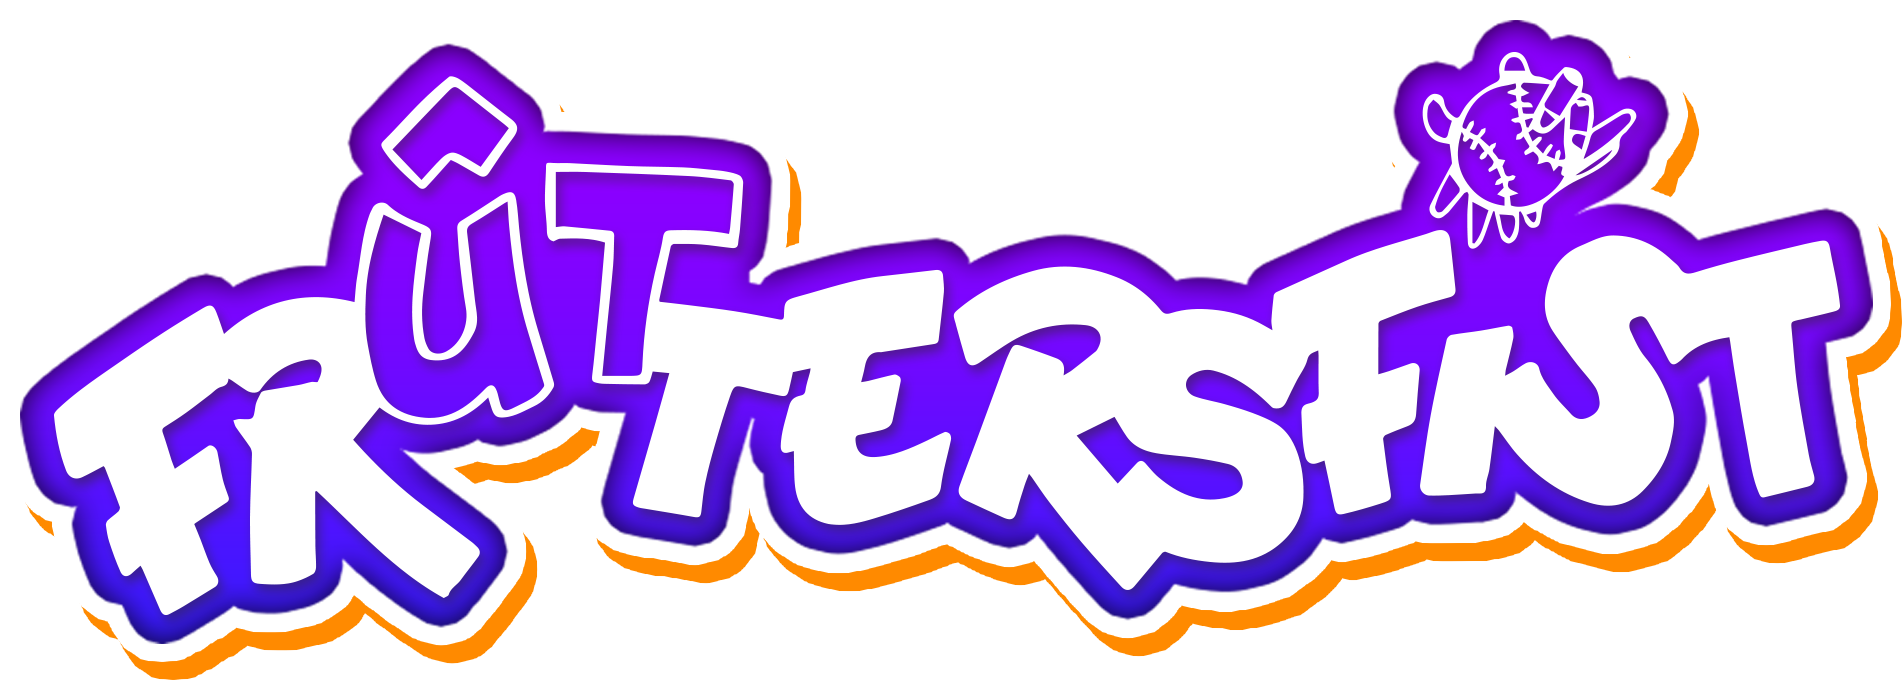 Logo ût Fruttersfist